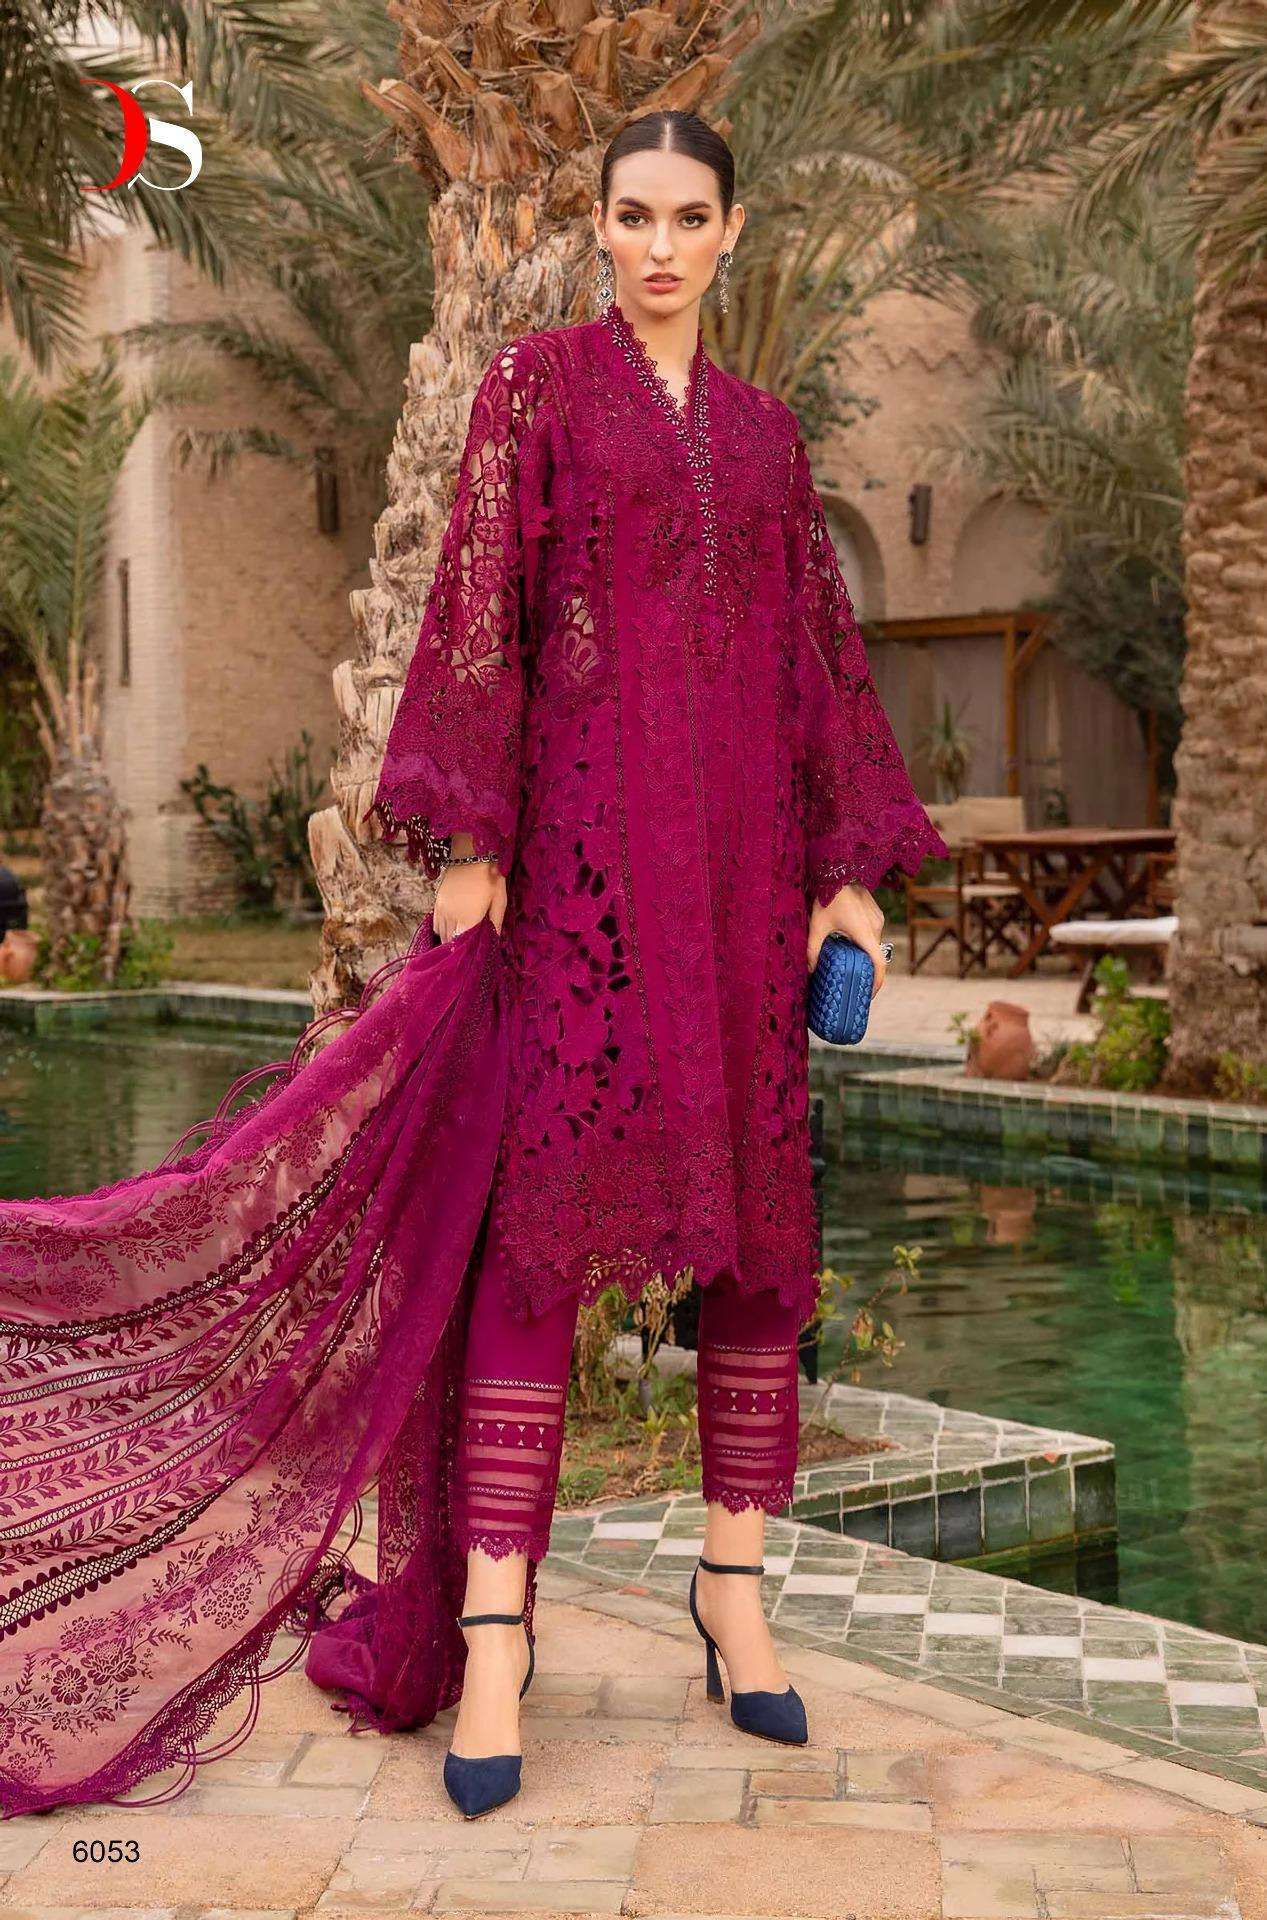 Deepsy Maria B Voyage Lawn 24 Cotton Dupatta Pakistani Suit Wholesale India